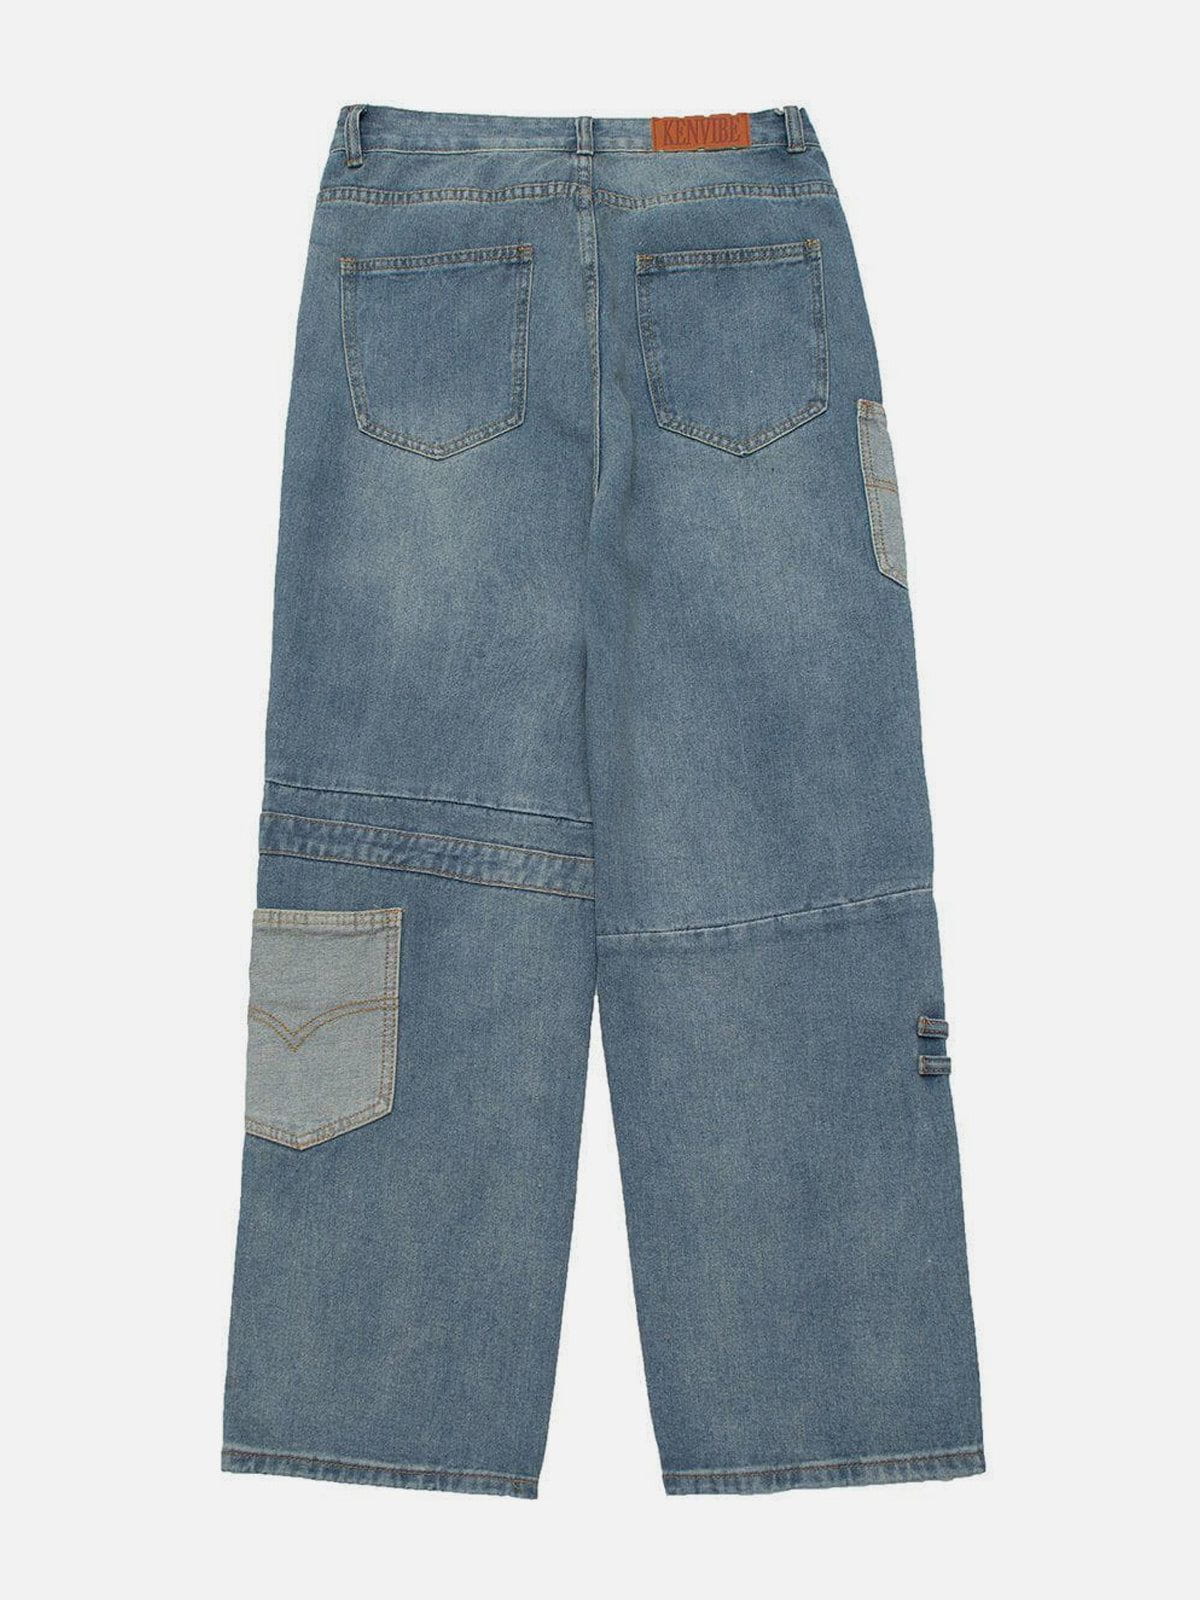 Eprezzy® - Side Pocket Trim Jeans Streetwear Fashion - eprezzy.com